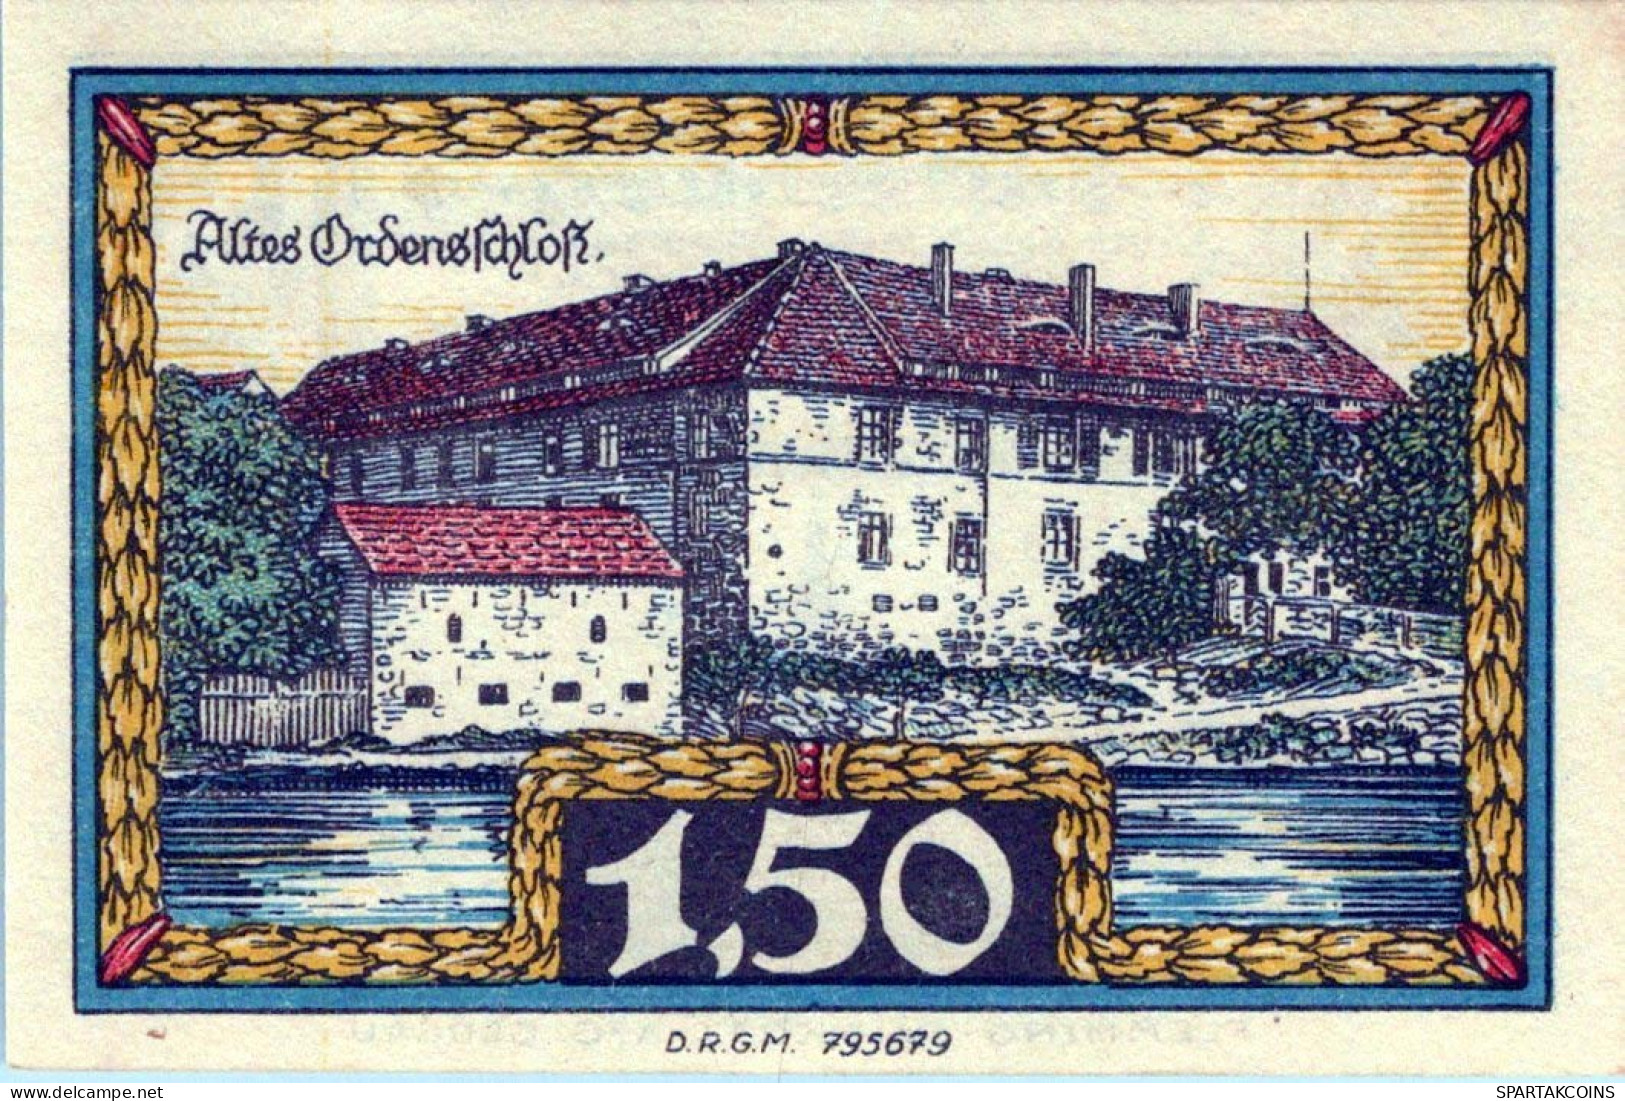 1.5 MARK 1914-1924 Stadt INSTERBURG East PRUSSLAND UNC DEUTSCHLAND Notgeld #PD142 - [11] Local Banknote Issues